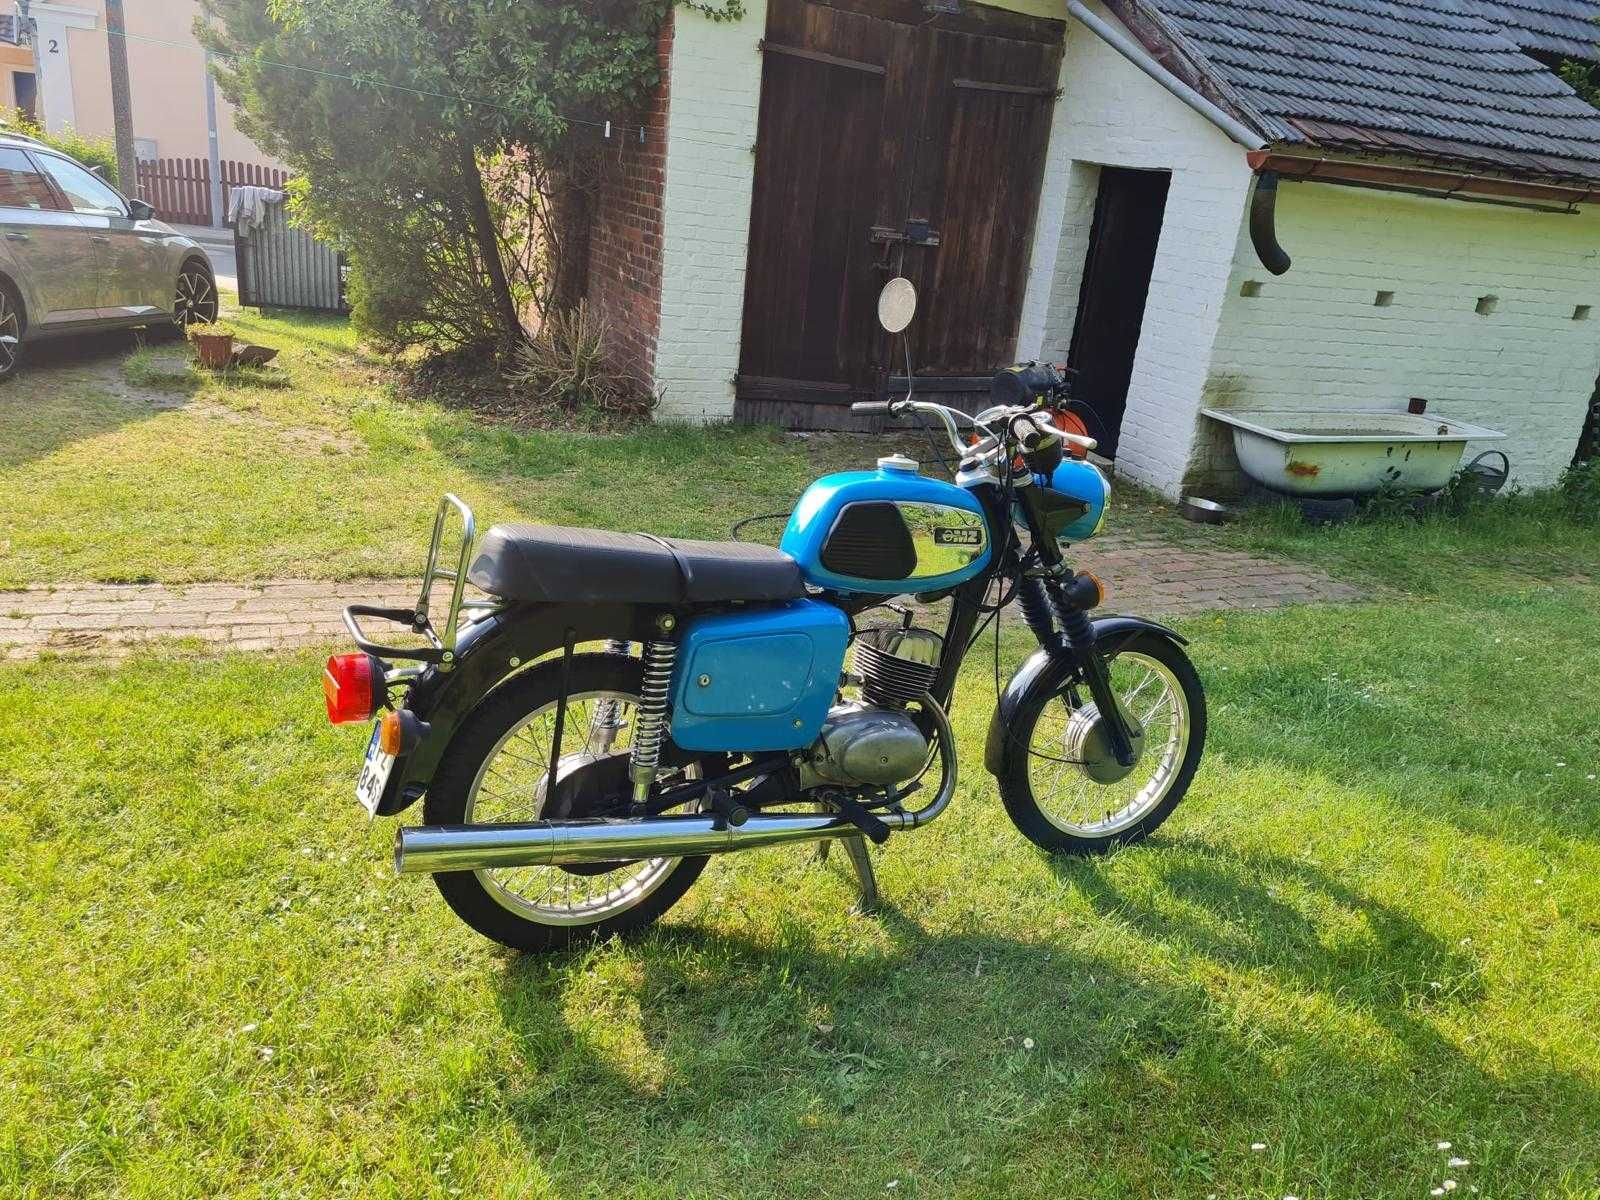 Motocykl MZ  TS 150 Kolekcjonerski z papierami Oryginał